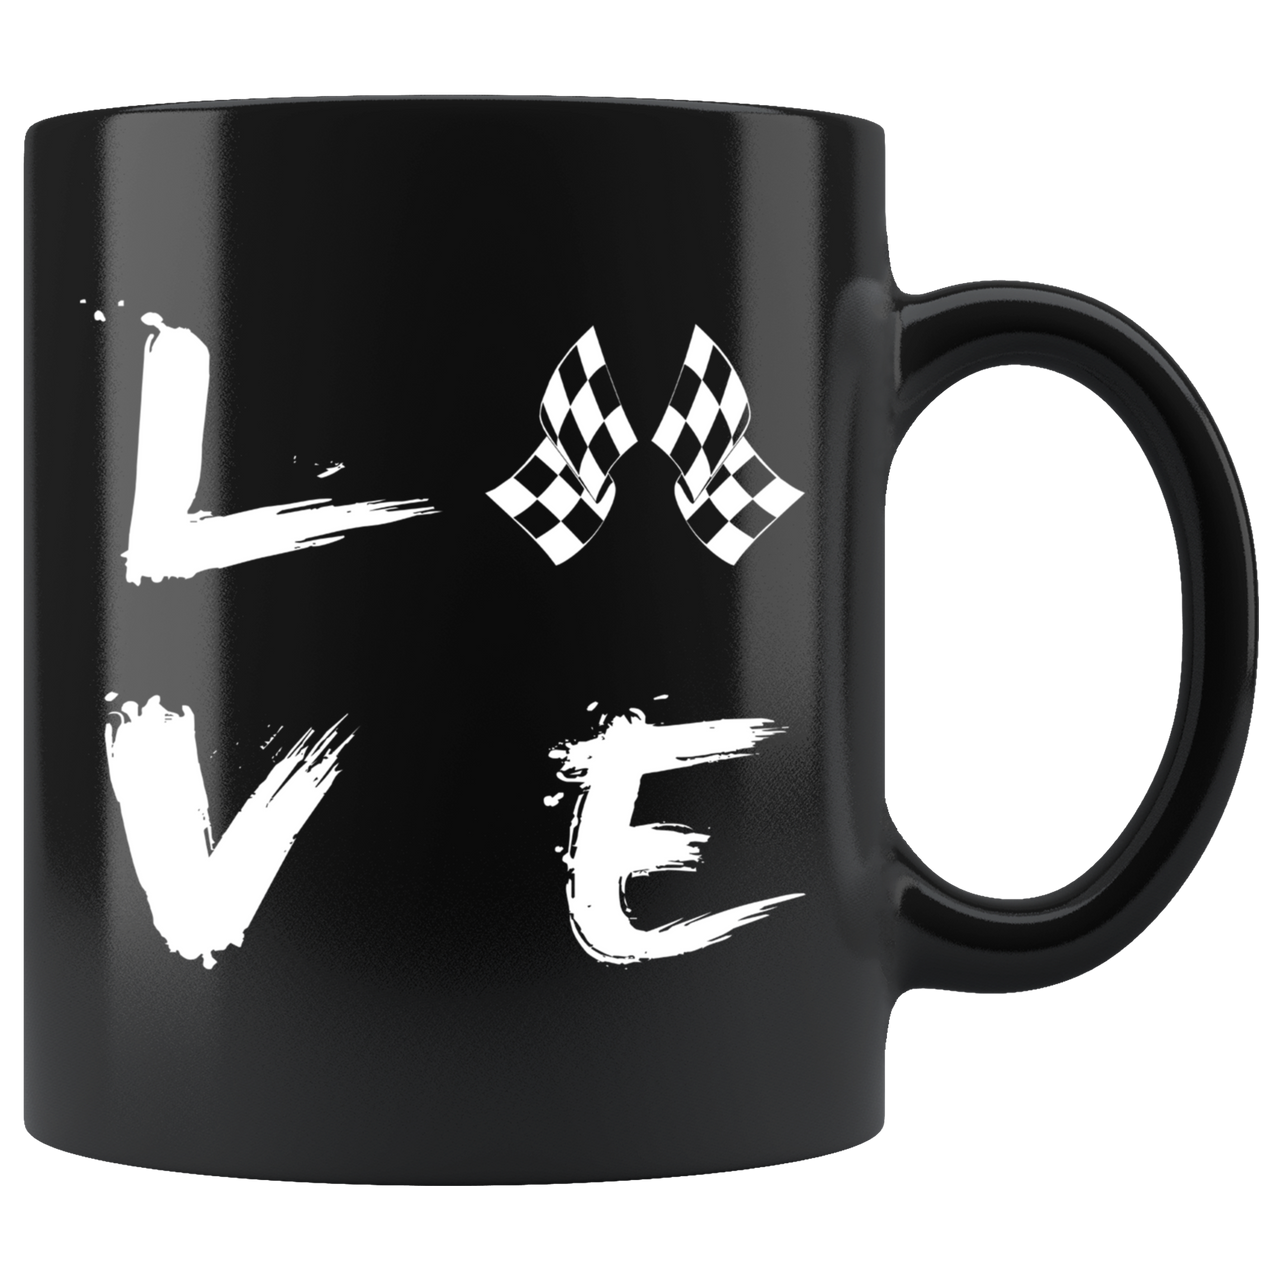 Love Racing Mug!